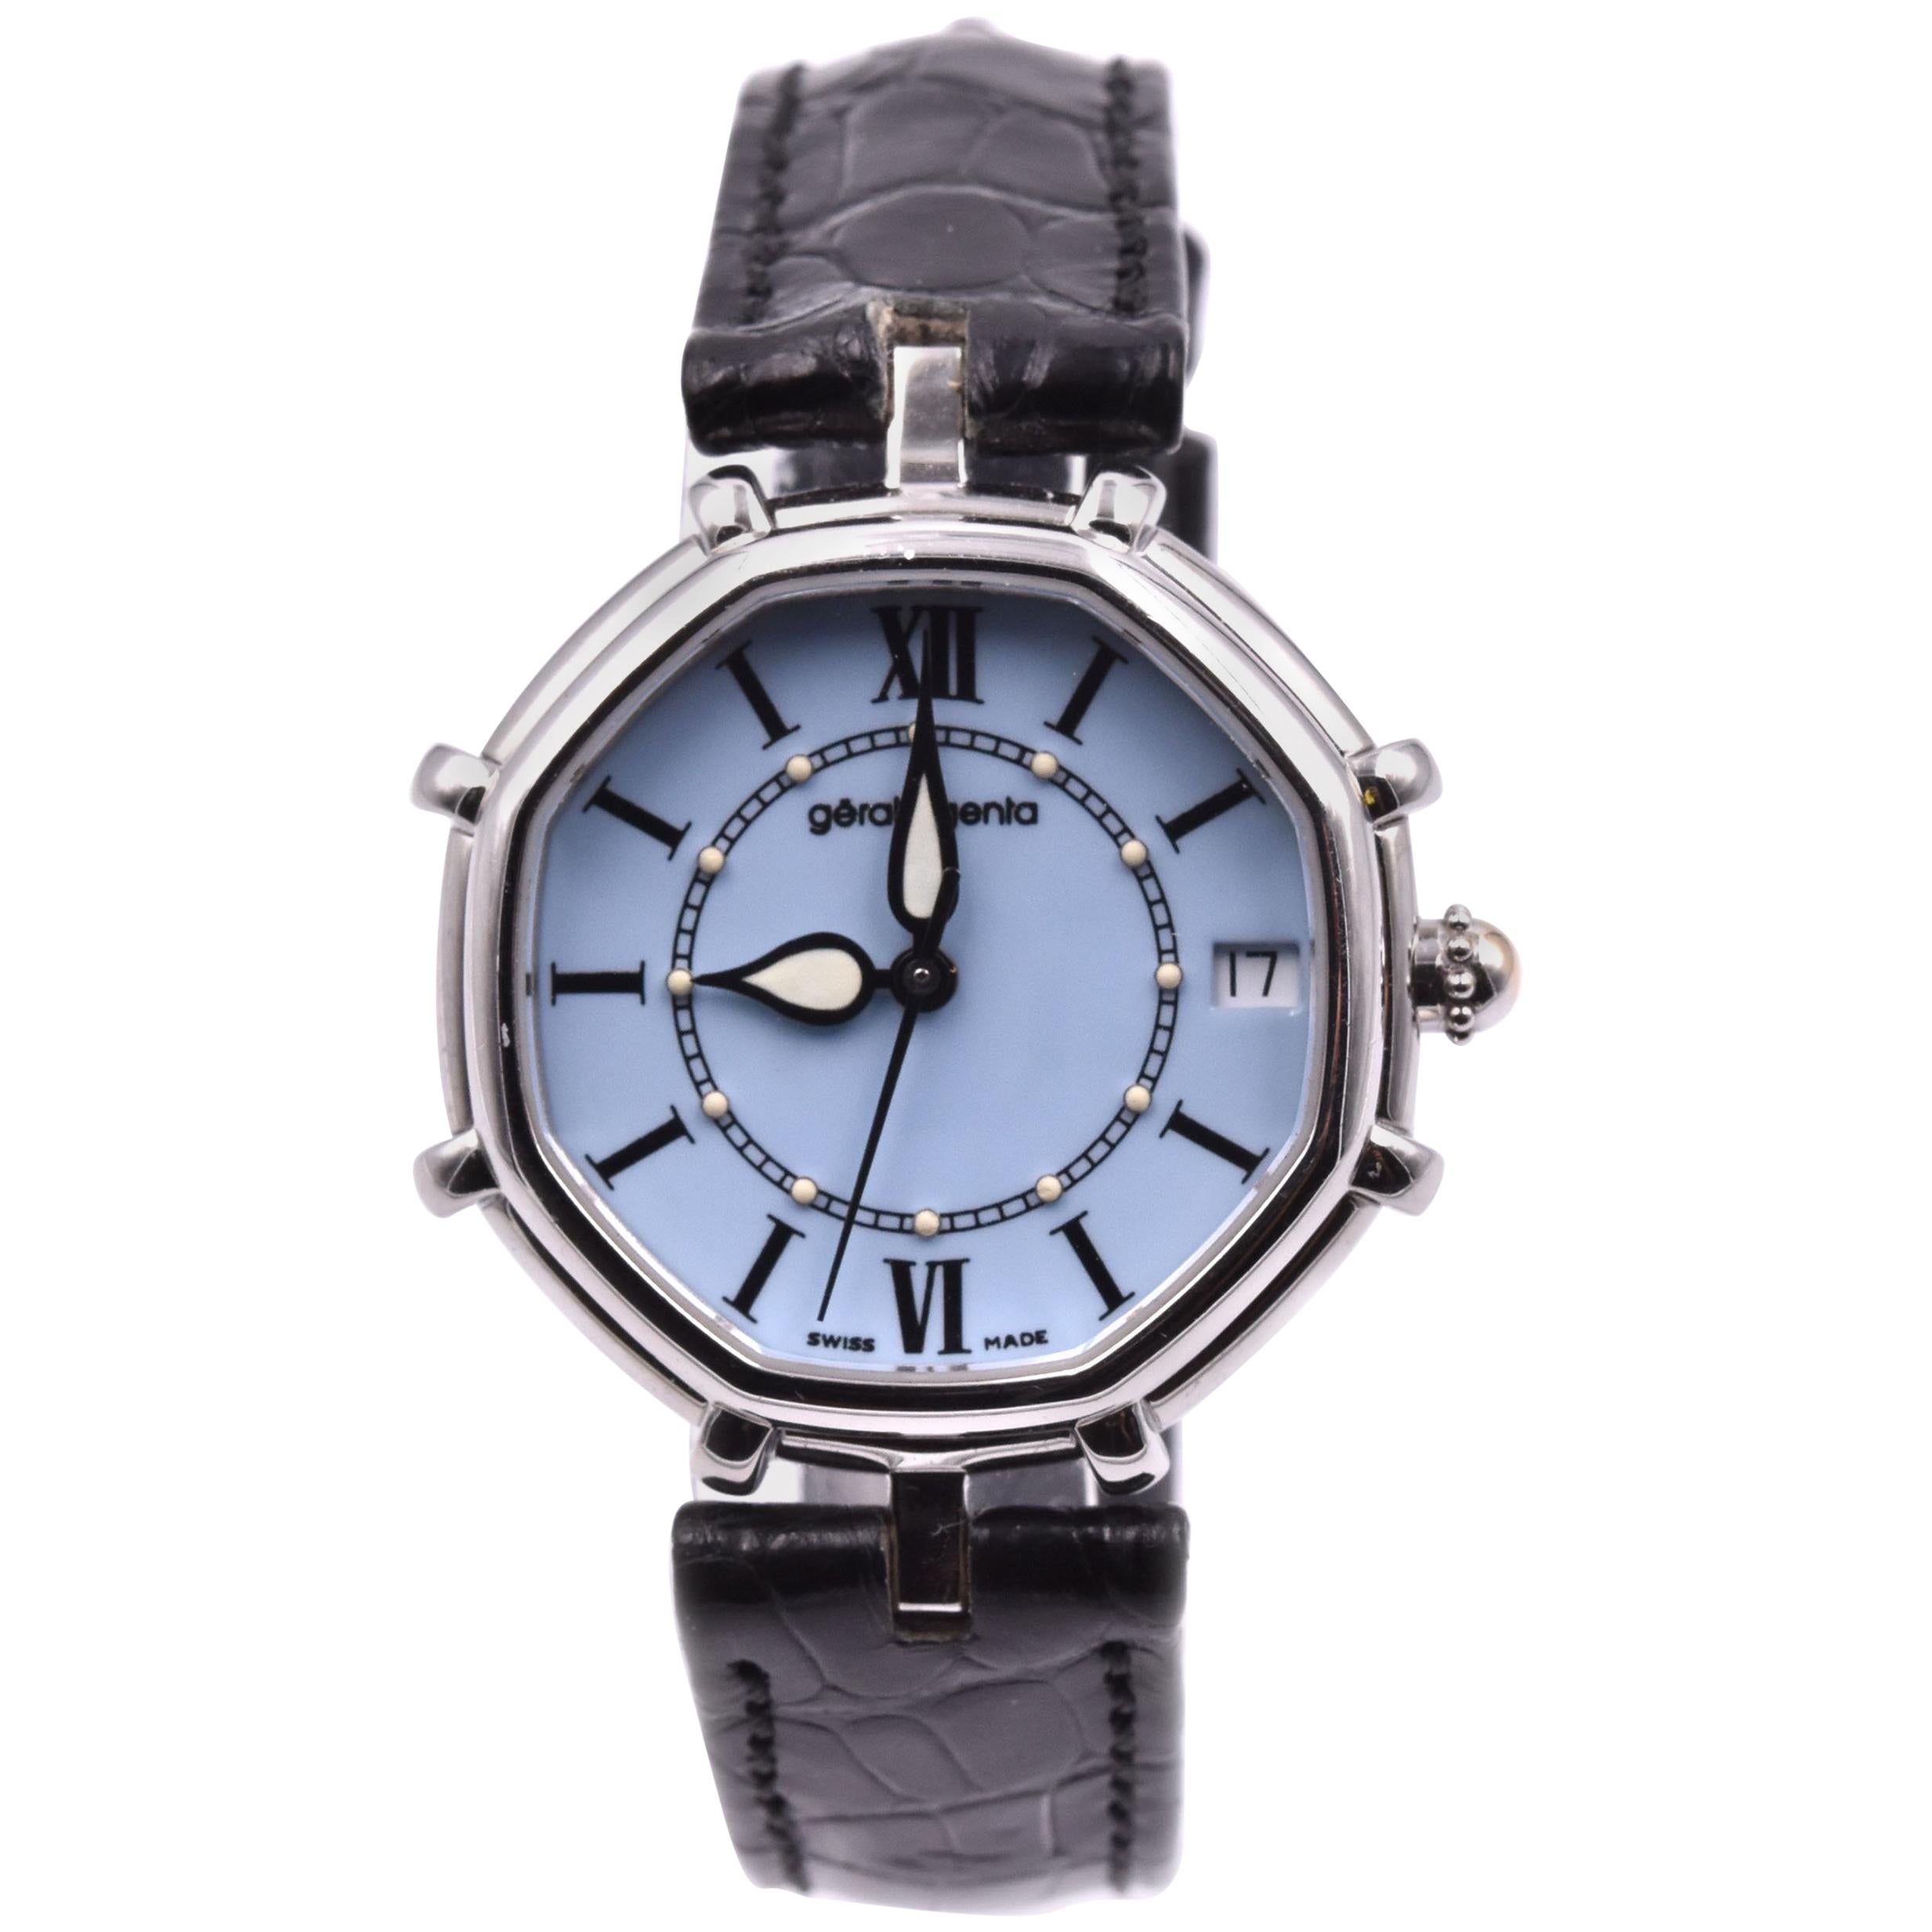 Gerald Genta Stainless Steel Watch Ref. G3485.7